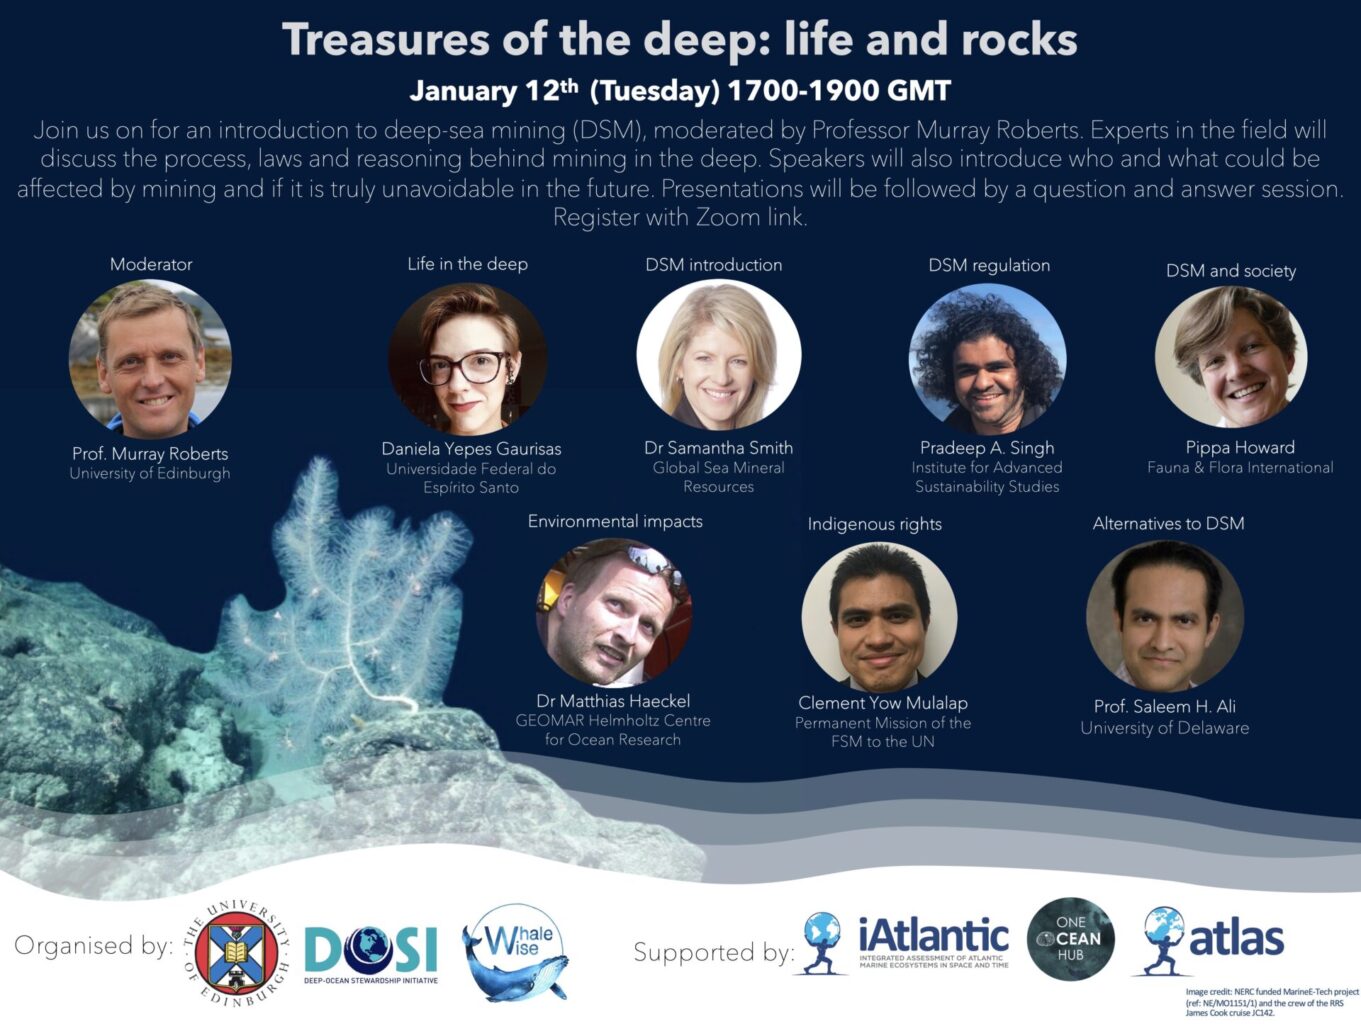 Flier for a webinar on deep-sea mining